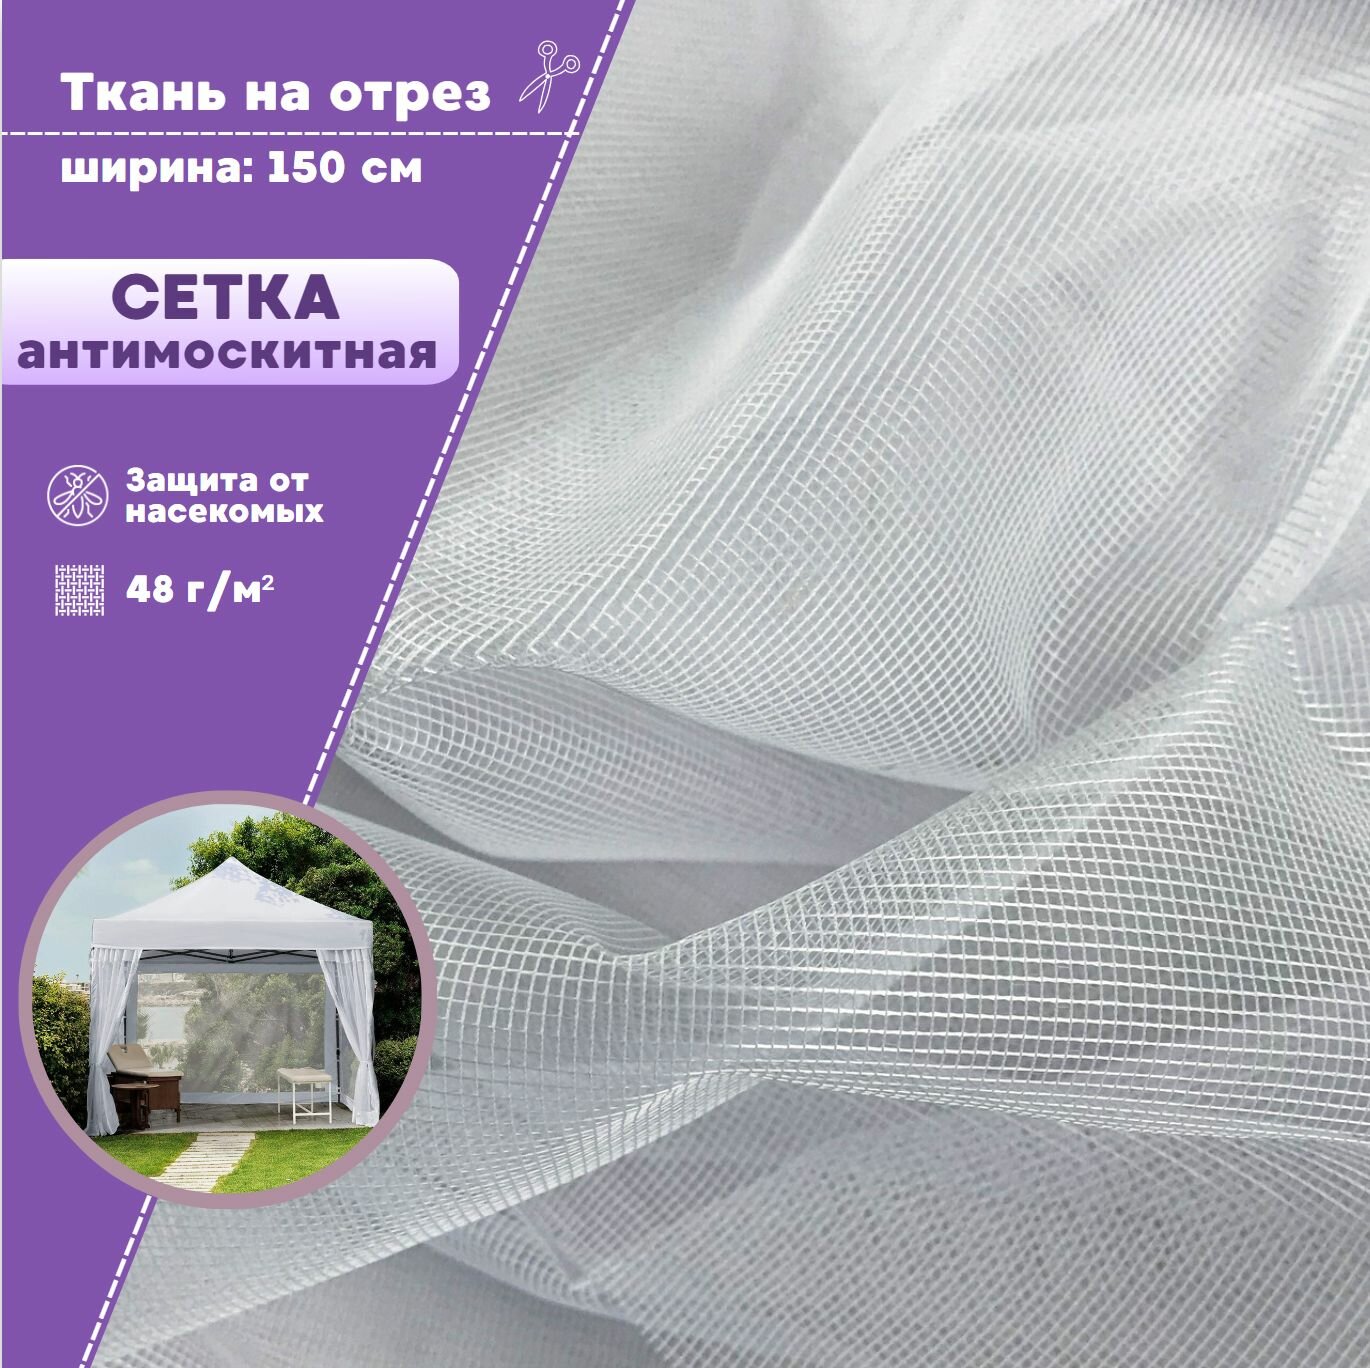 Ткань Сетка Антимоскитная мягкая полиэфирная для шатров и беседок, цв. белый, пл. 48 г/м2, ш-150 см, на отрез, цена за пог. метр